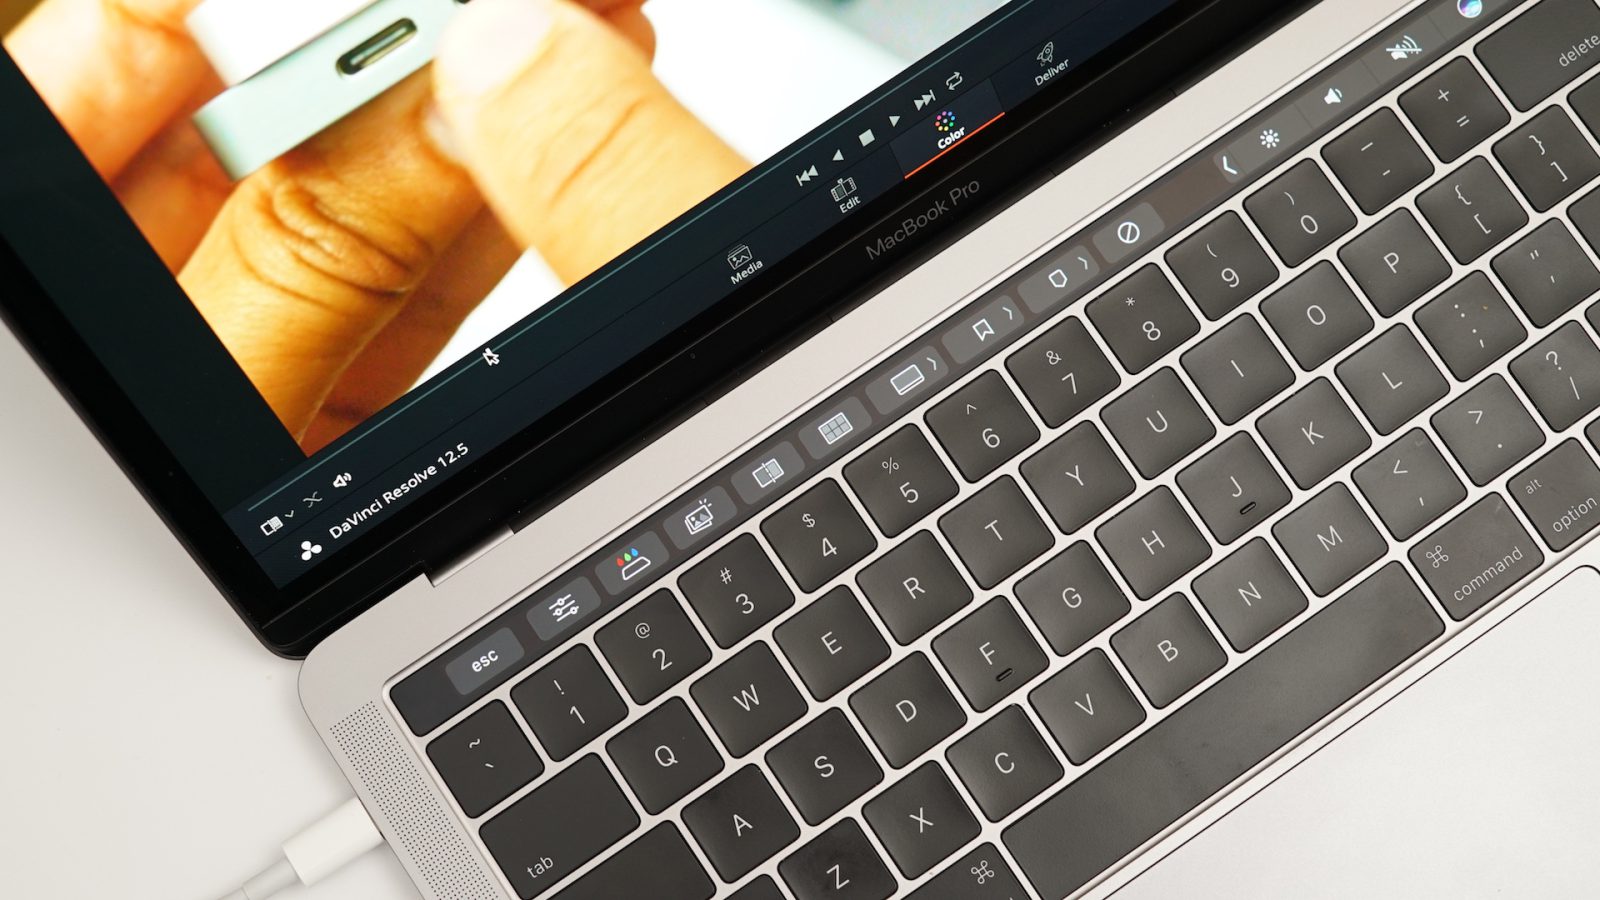 Claviers défectueux des MacBook : 6 millions $ pour l'action